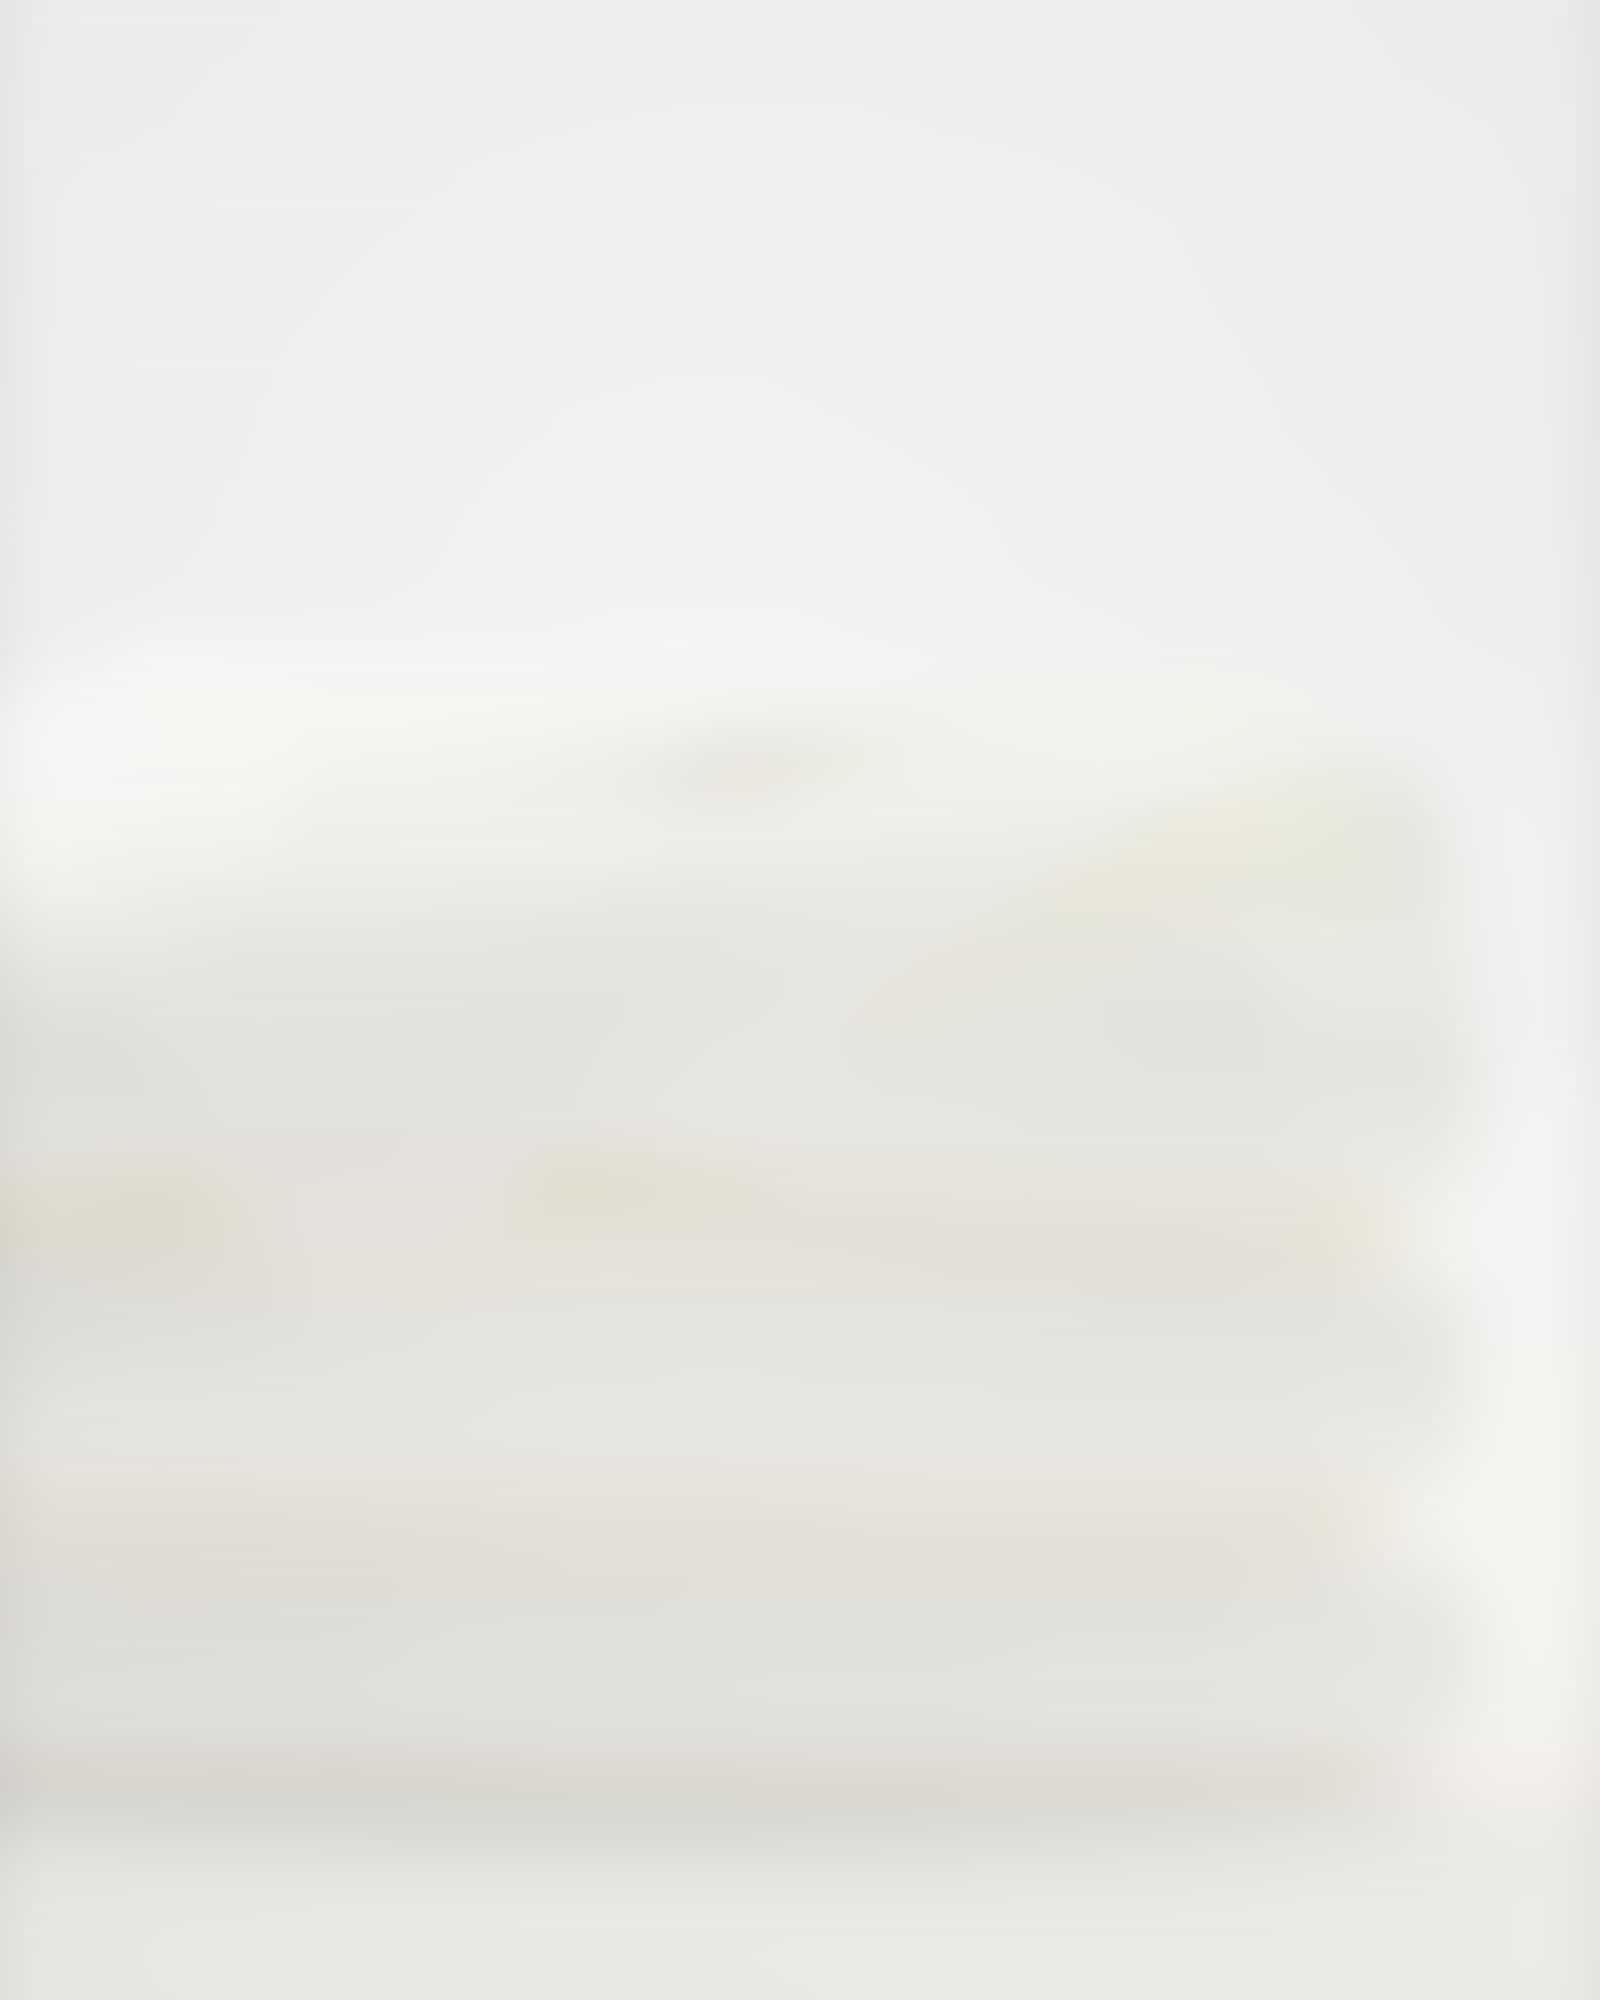 Möve - Superwuschel - Farbe: snow - 001 (0-1725/8775) - Handtuch 50x100 cm Detailbild 2